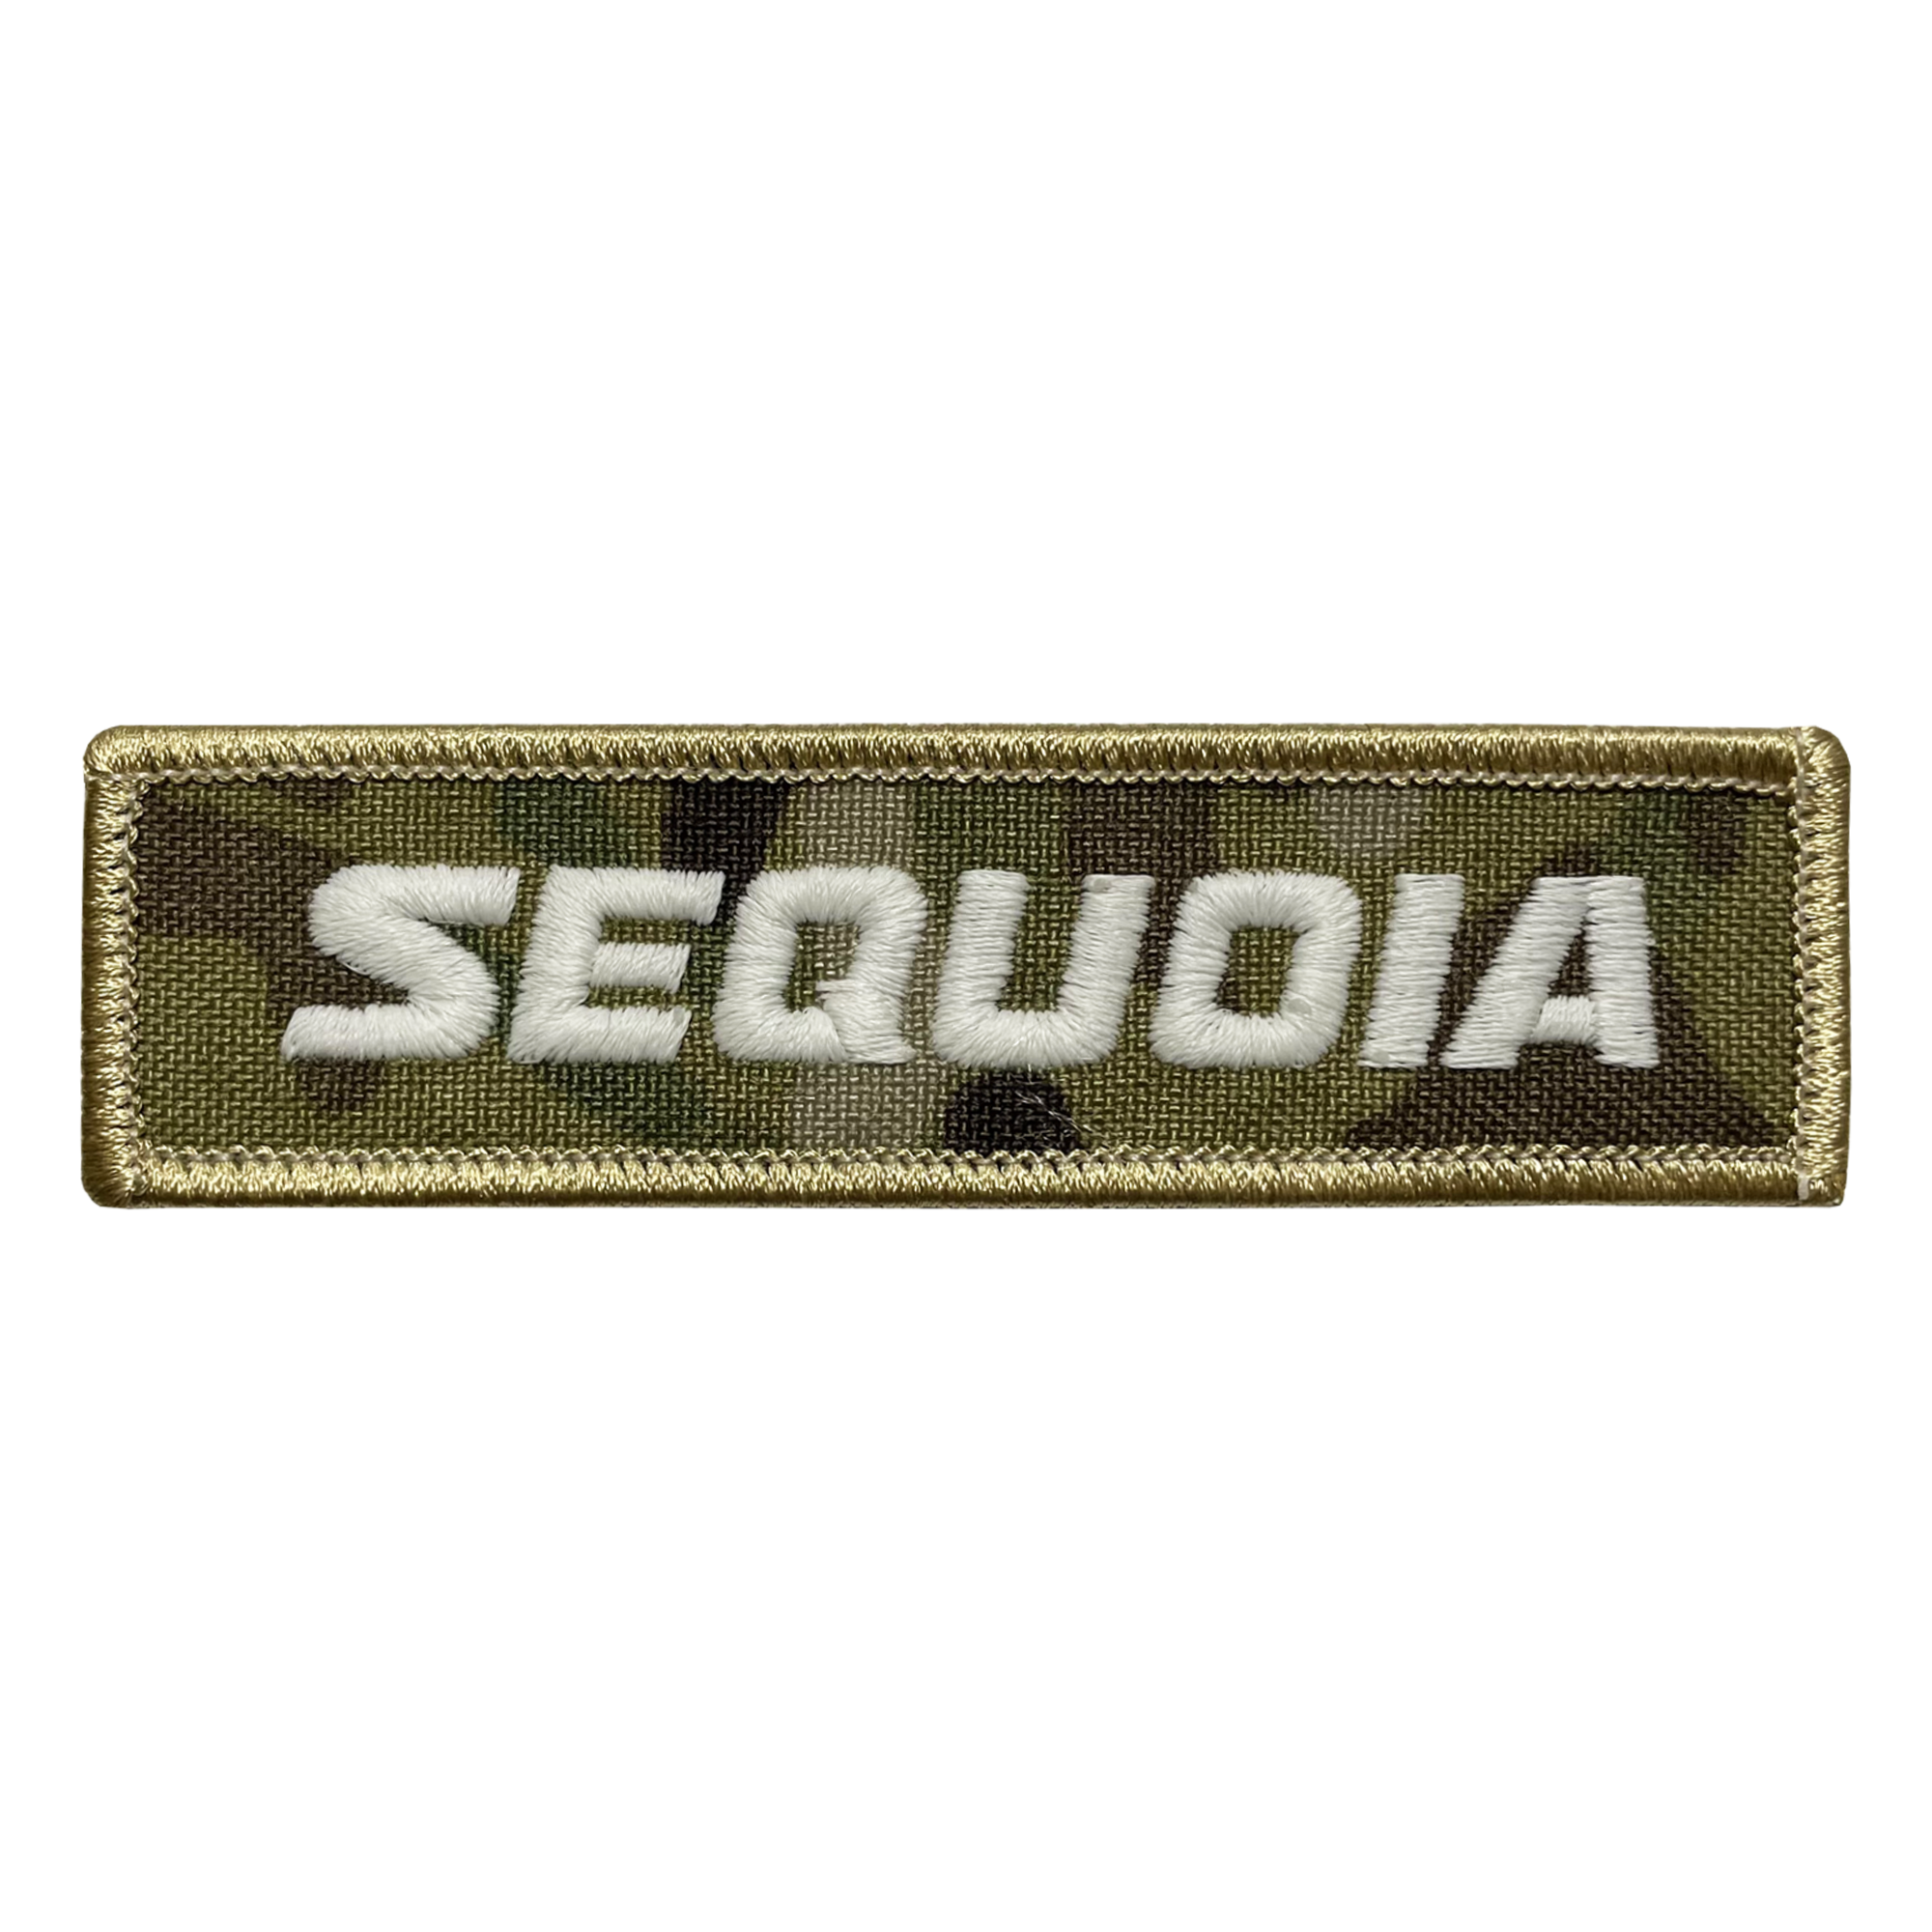 Sequoia Camo Name Tape Patch - GZila Designs